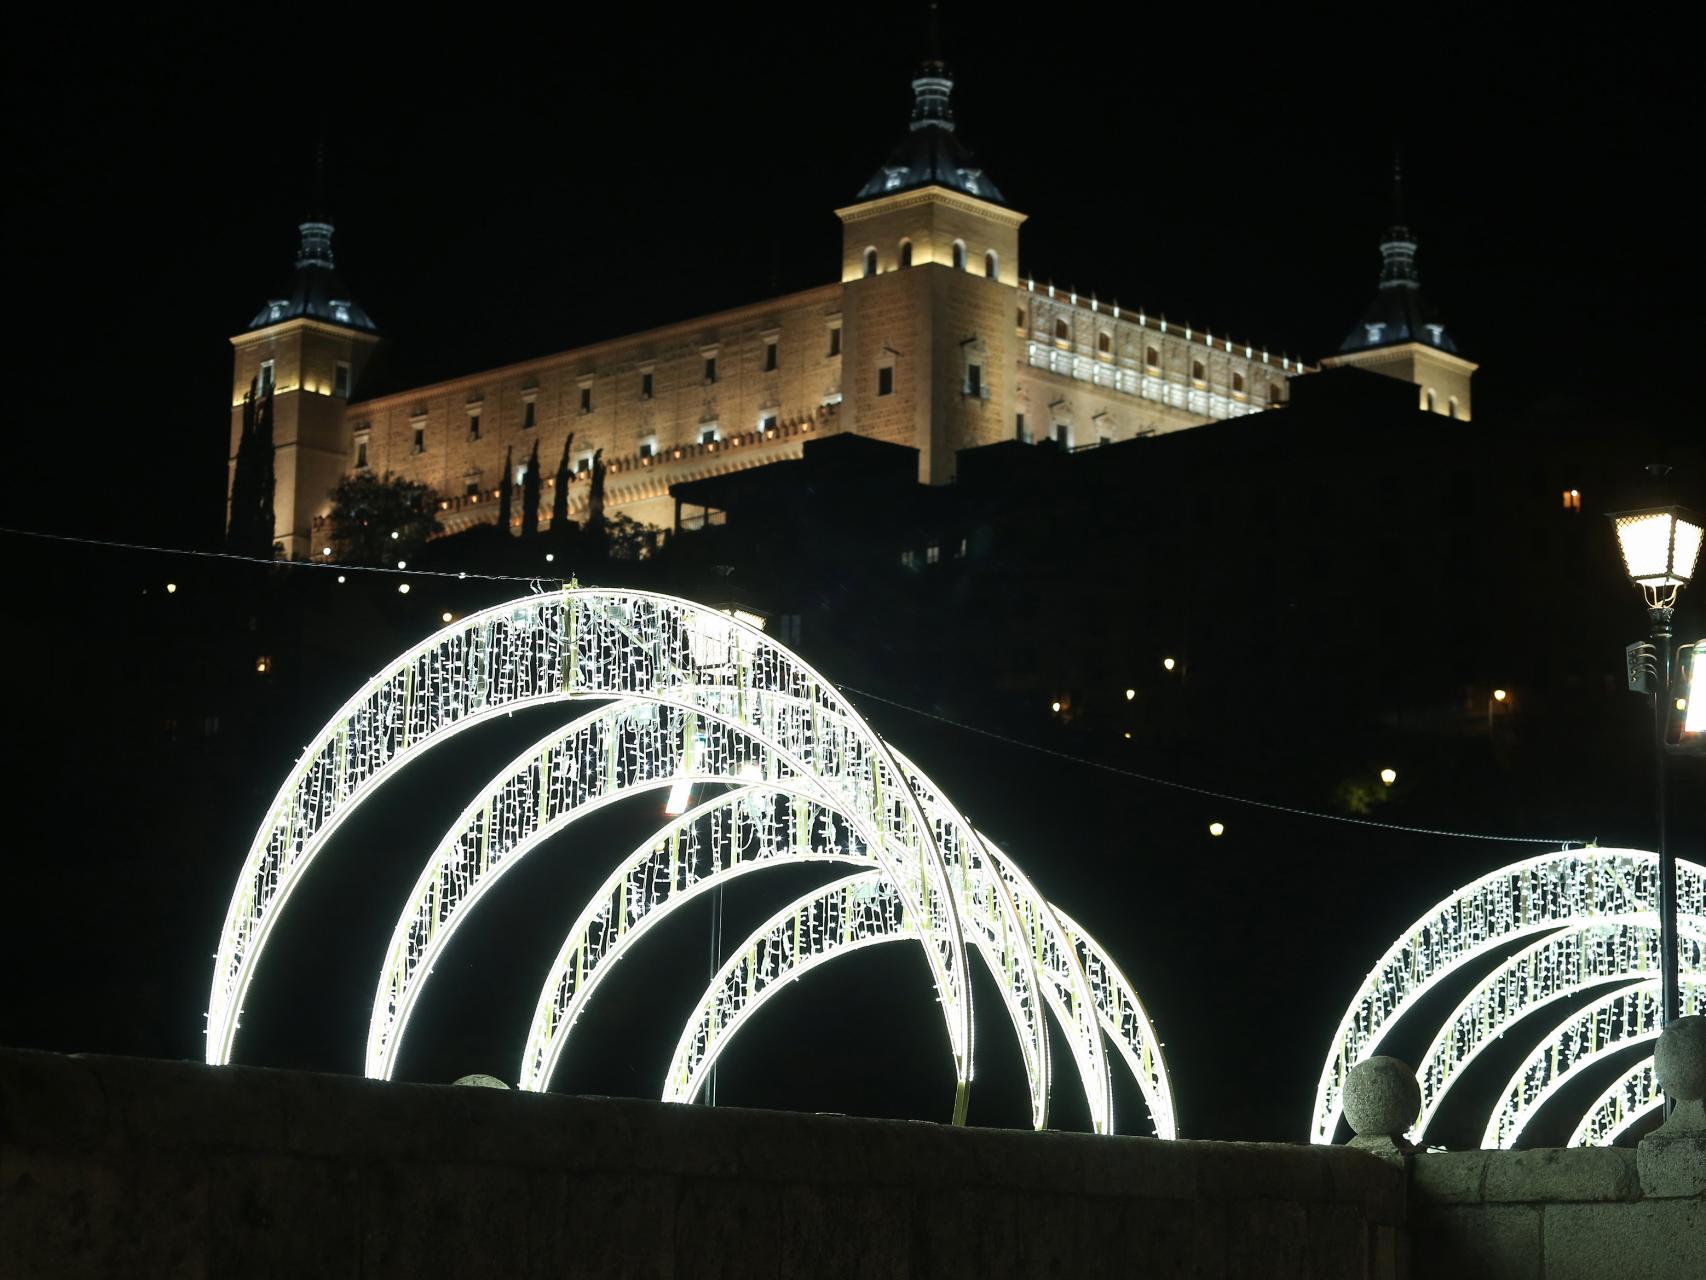 Ayuntamiento de Toledo MANUALIDADES TOLEDO – MONOGRÁFICO ADULTOS (creación  farolillo de Navidad)